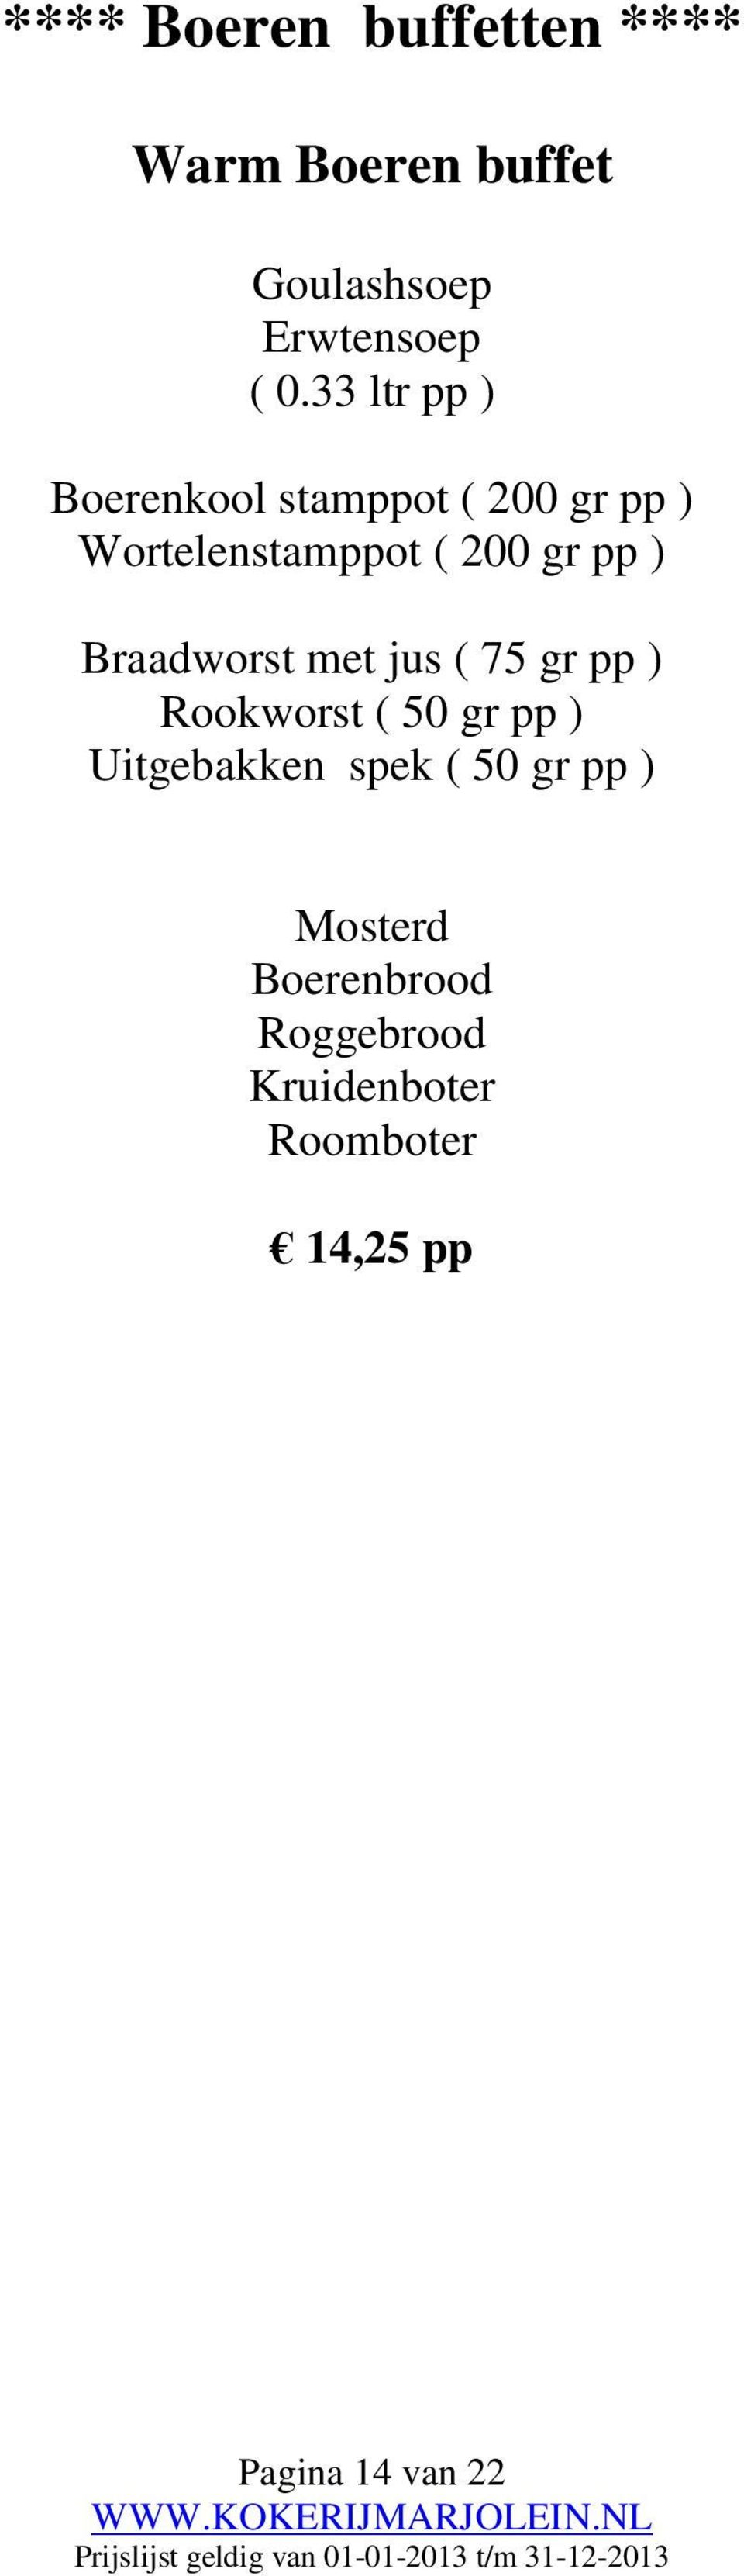 ) Braadworst met jus ( 75 gr pp ) Rookworst ( 50 gr pp ) Uitgebakken spek (